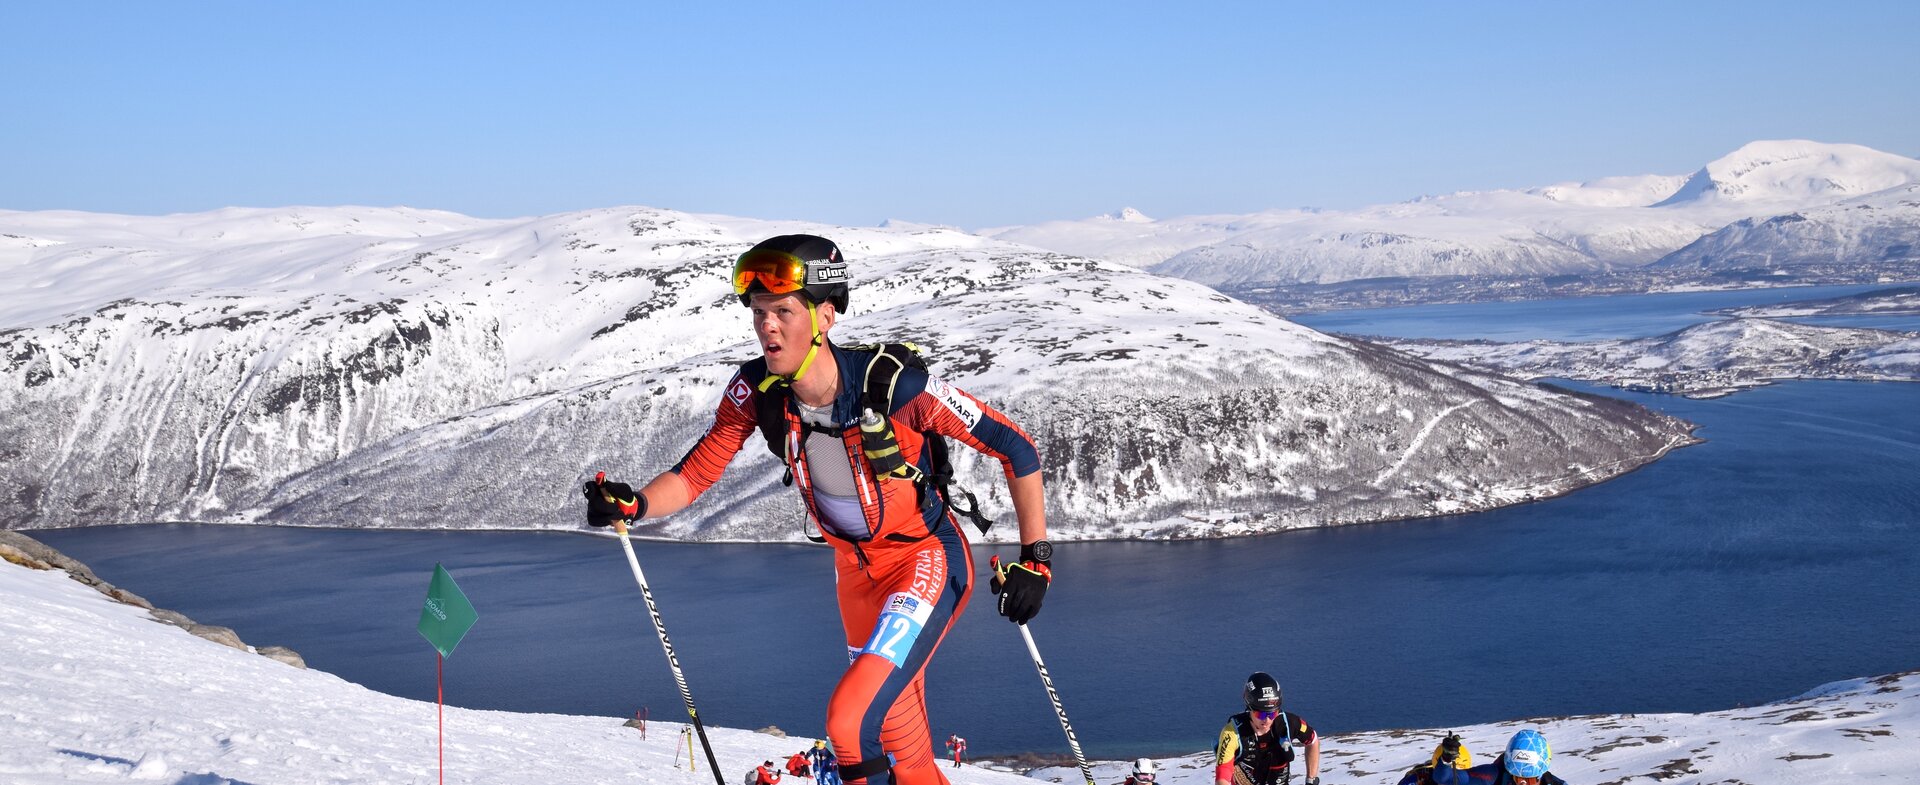 Bestes Individual Ergebnis mit Platz 5 für Paul Verbnjak | © Ski Austria / Weigl: